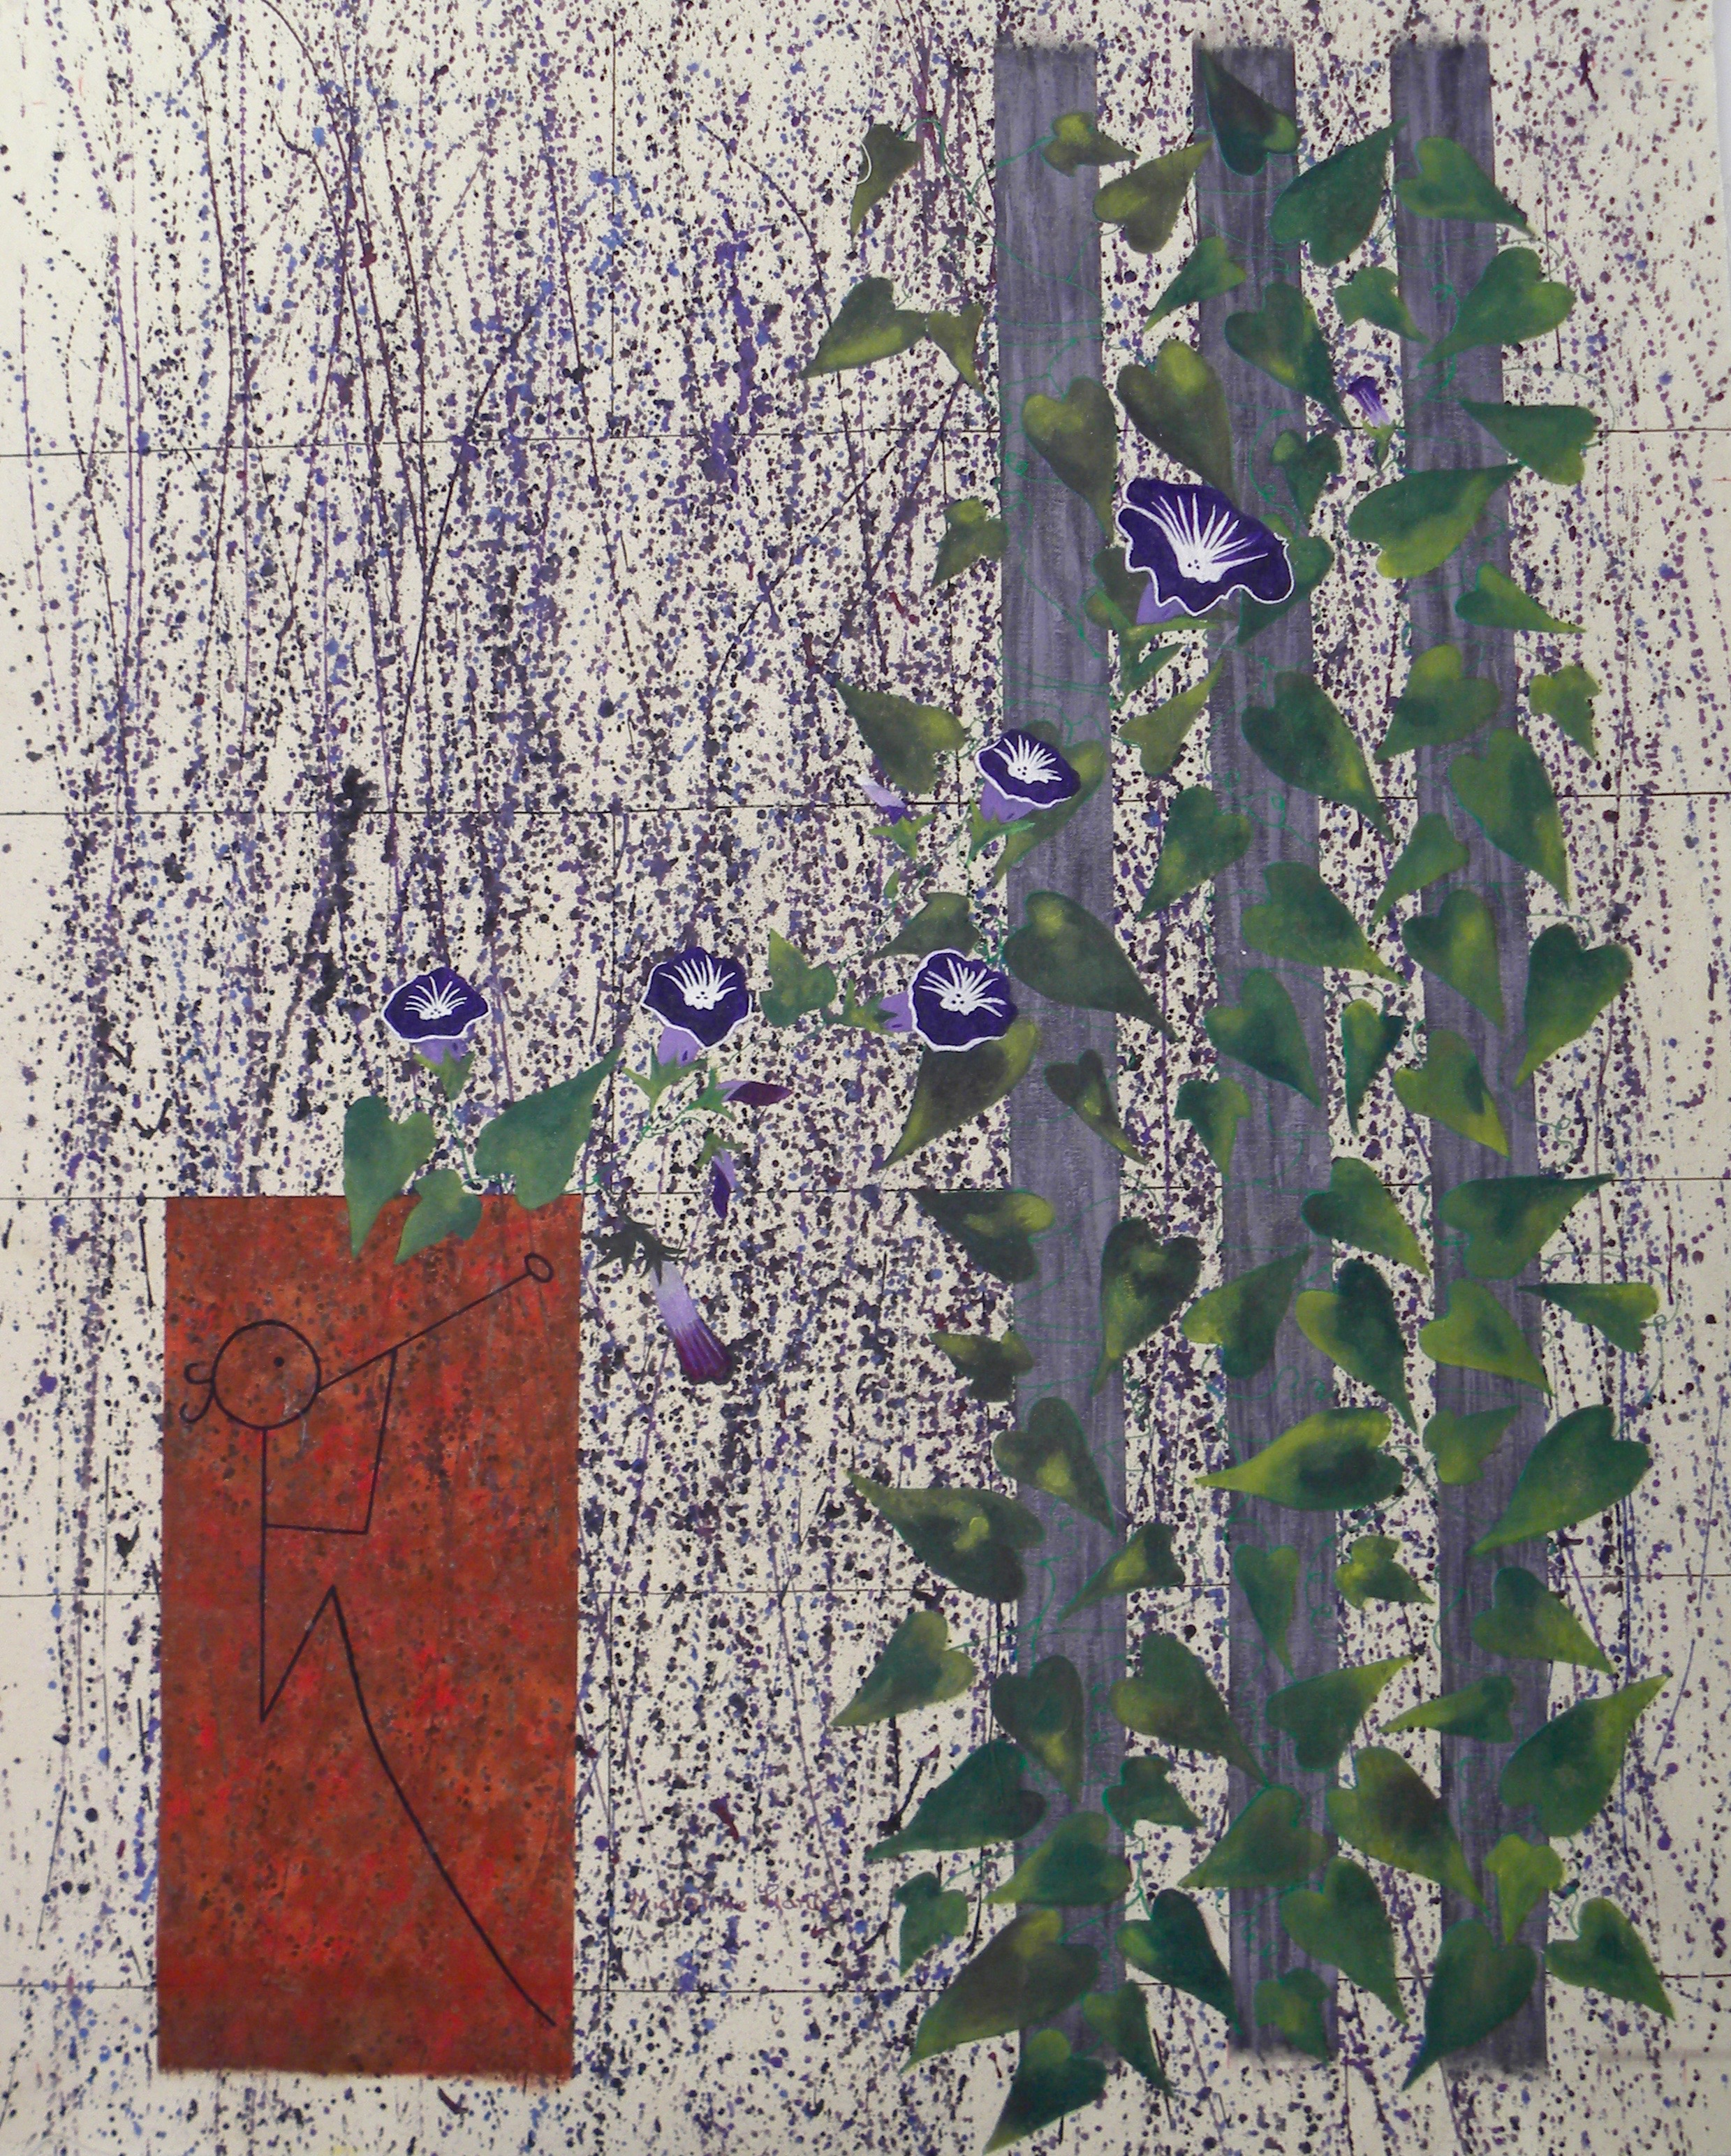 Série : Las Galeras
Titre : Chant des fleurs
Médium : Acrylique / toile galerie
Dimensions : L 76 X H 93 X 4 cm